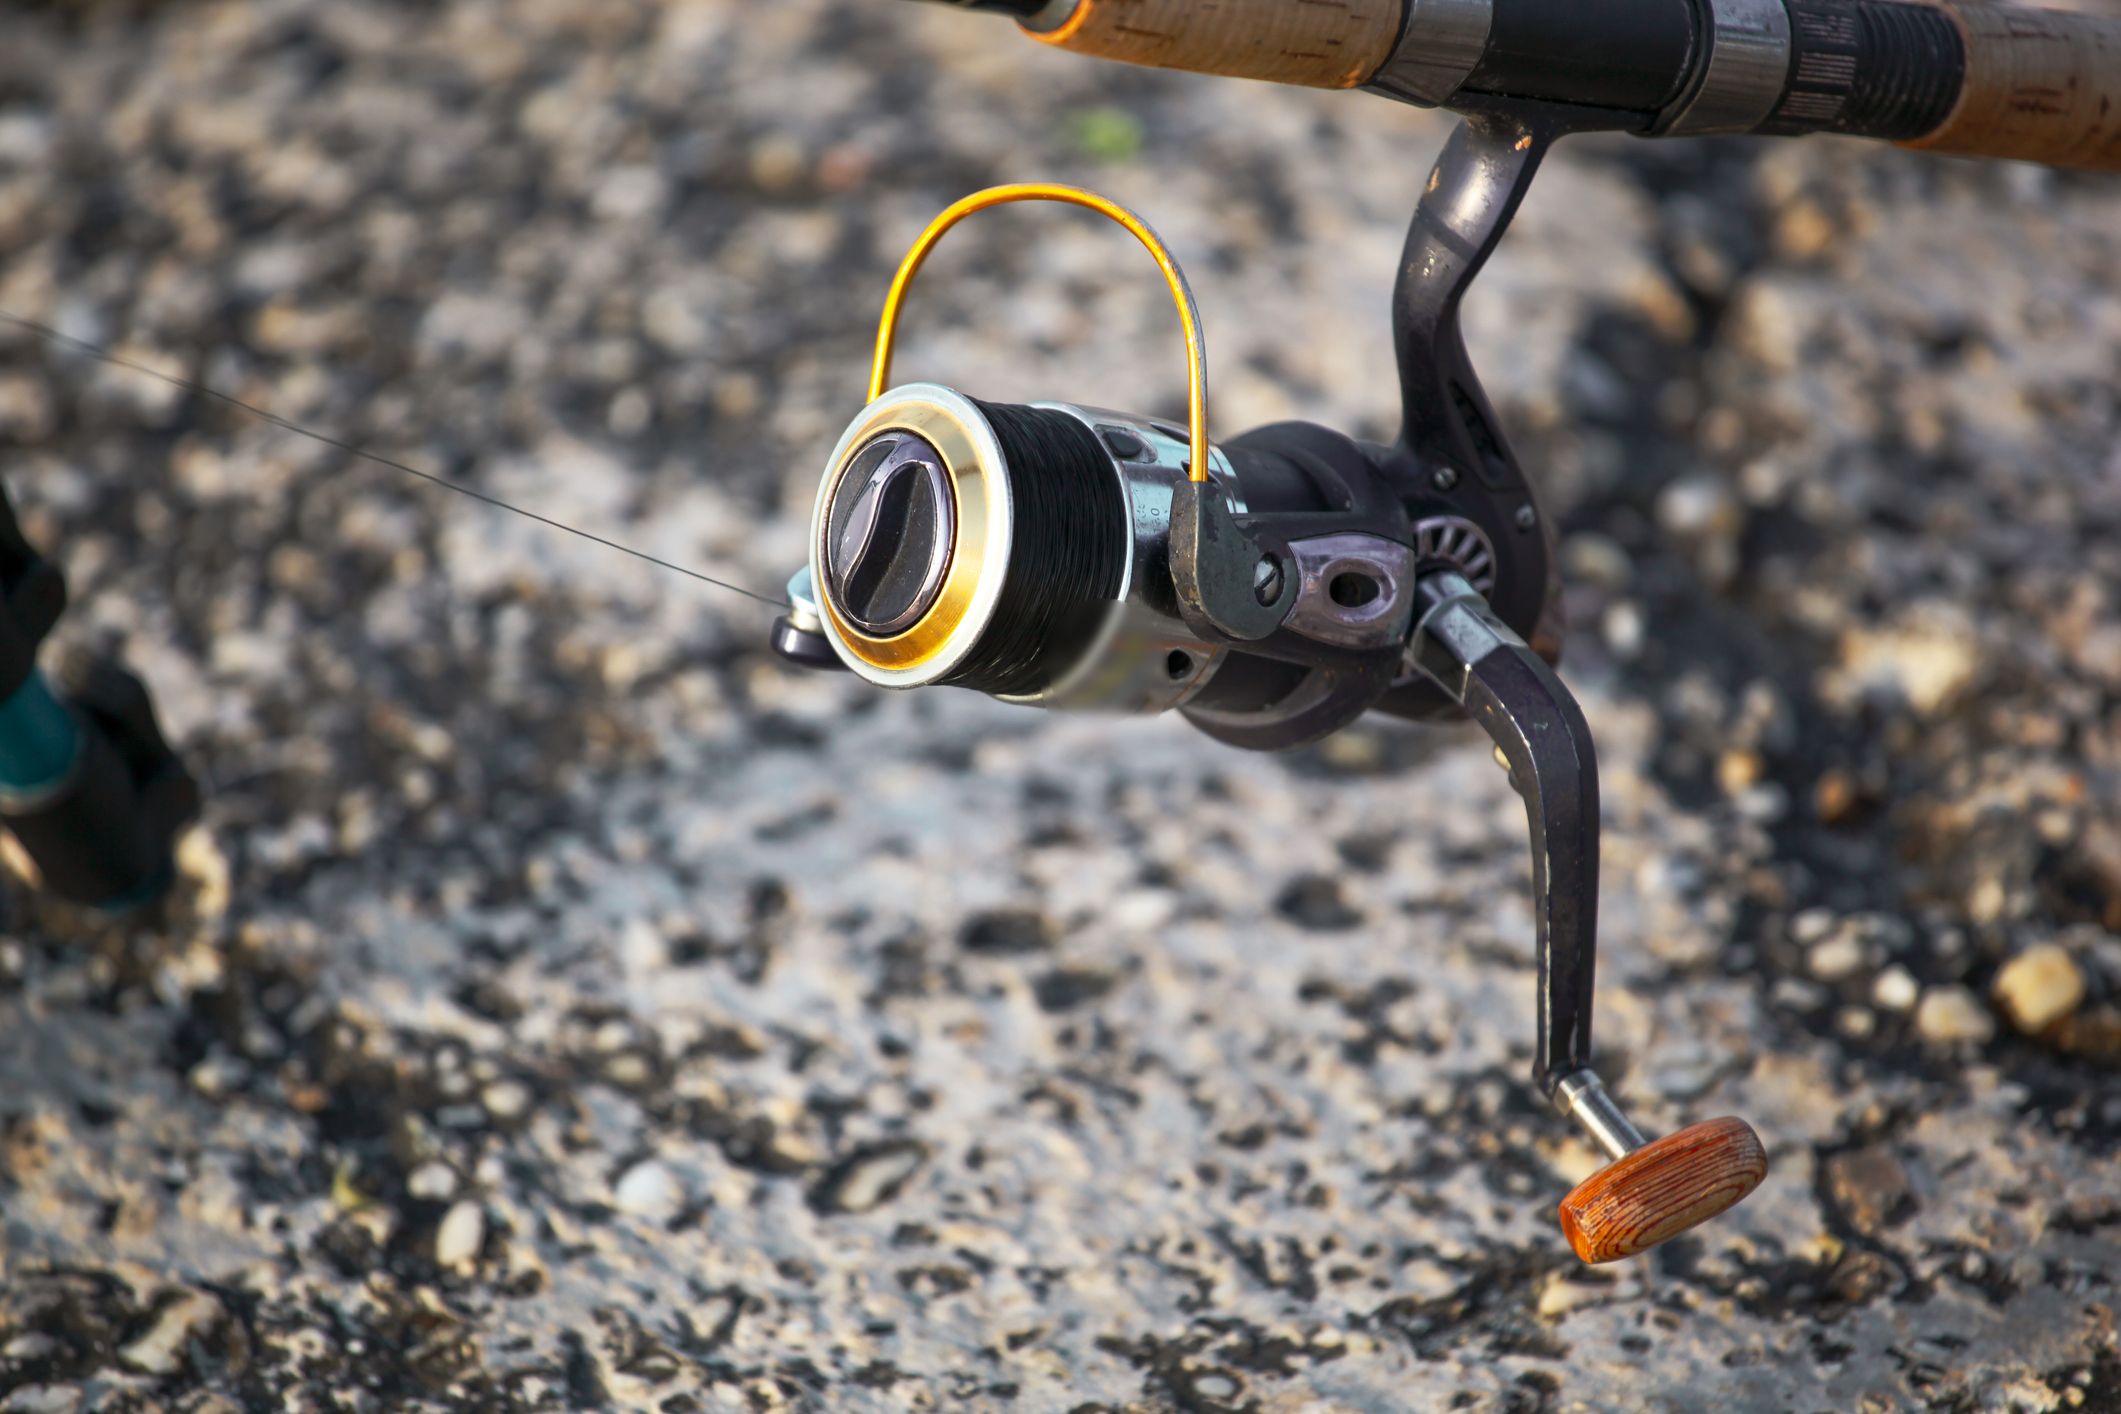 Spinning fishing reel Shimano Sedona 2500S, Sports Equipment